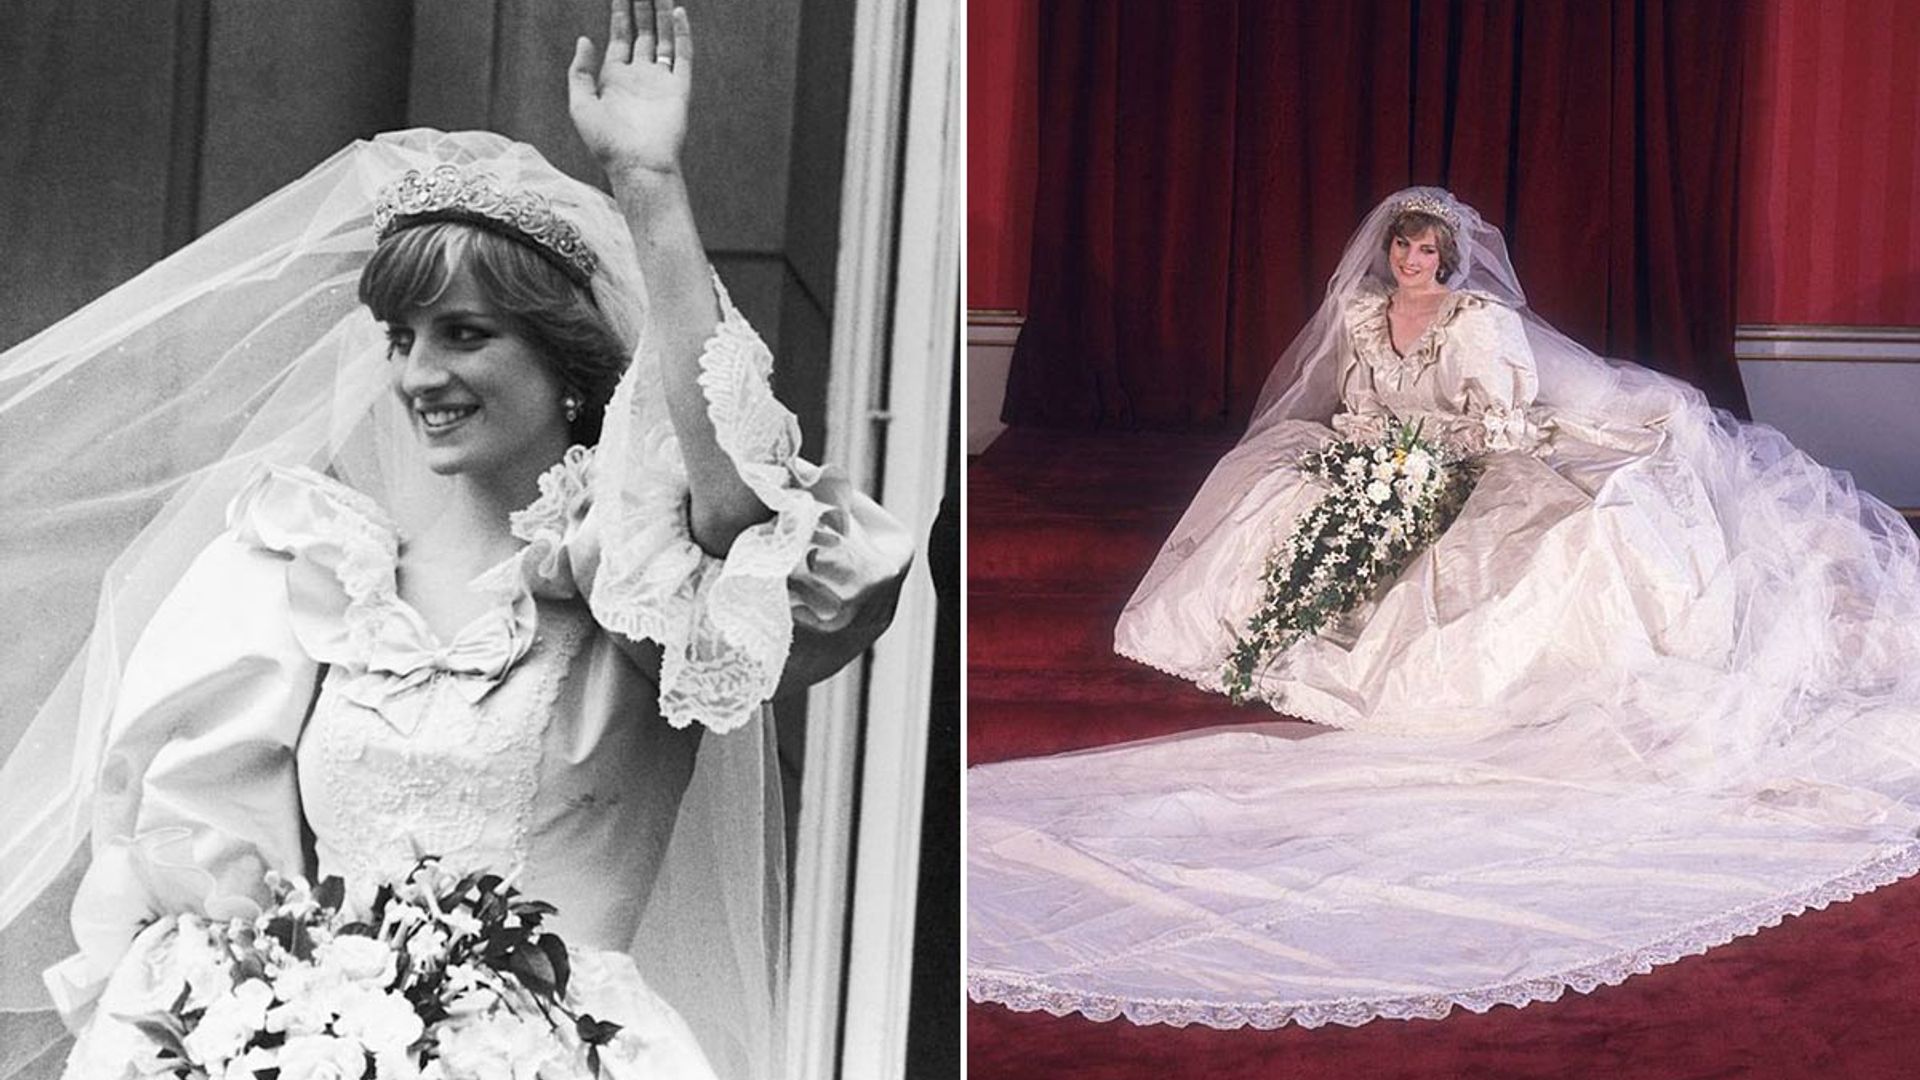 Wedding dress of Lady Diana Spencer - Wikipedia